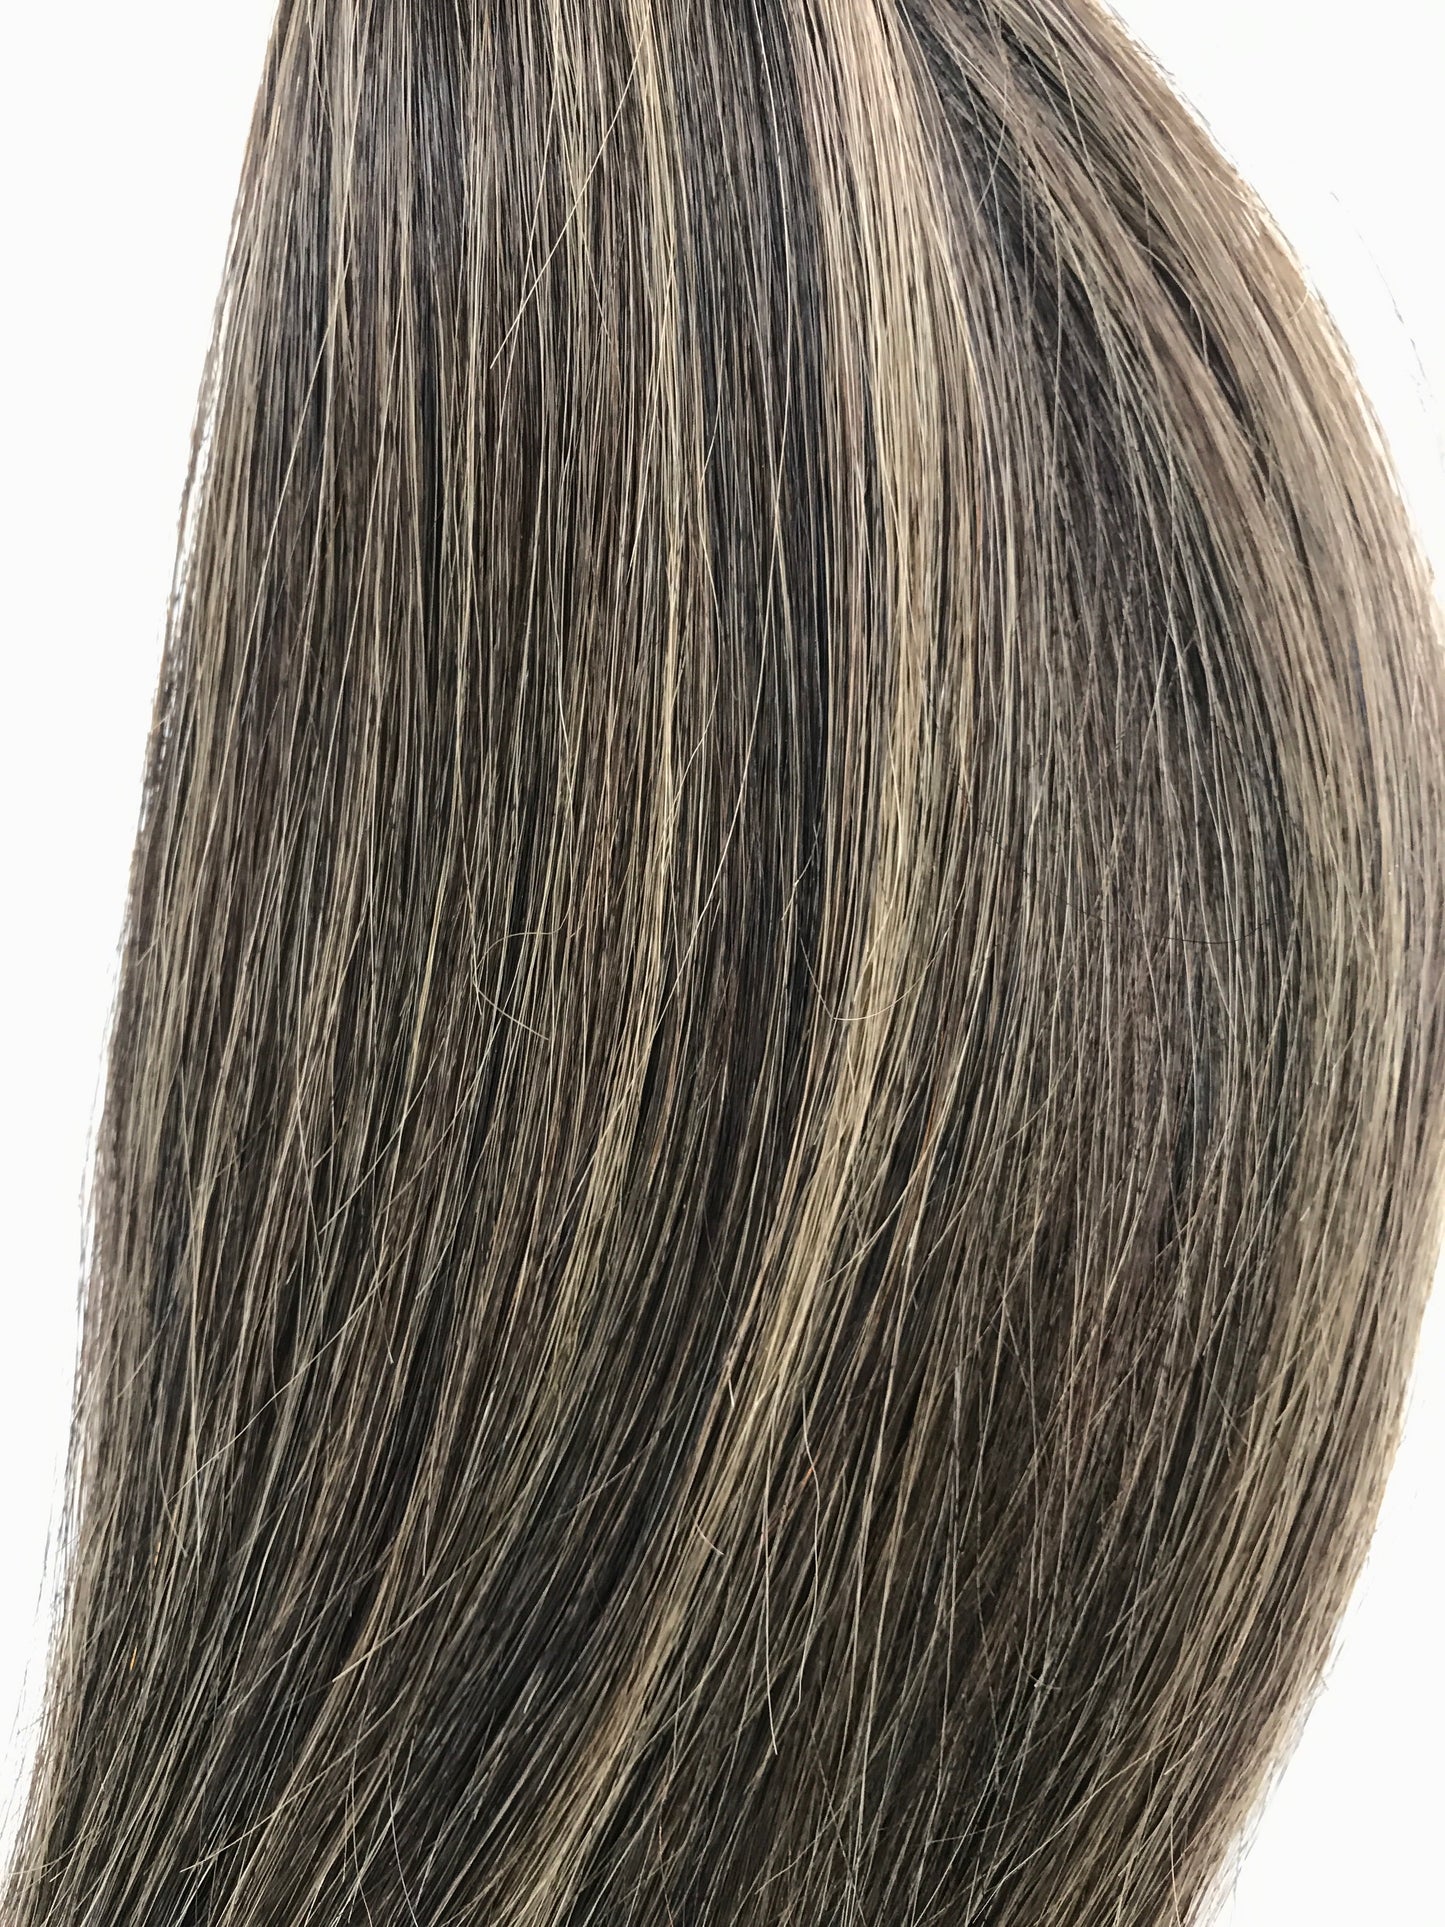 Ryskt Remy mänskligt hår, 0,7 g i-Tips , Bodywave, 16'', 100 g, snabb frakt!